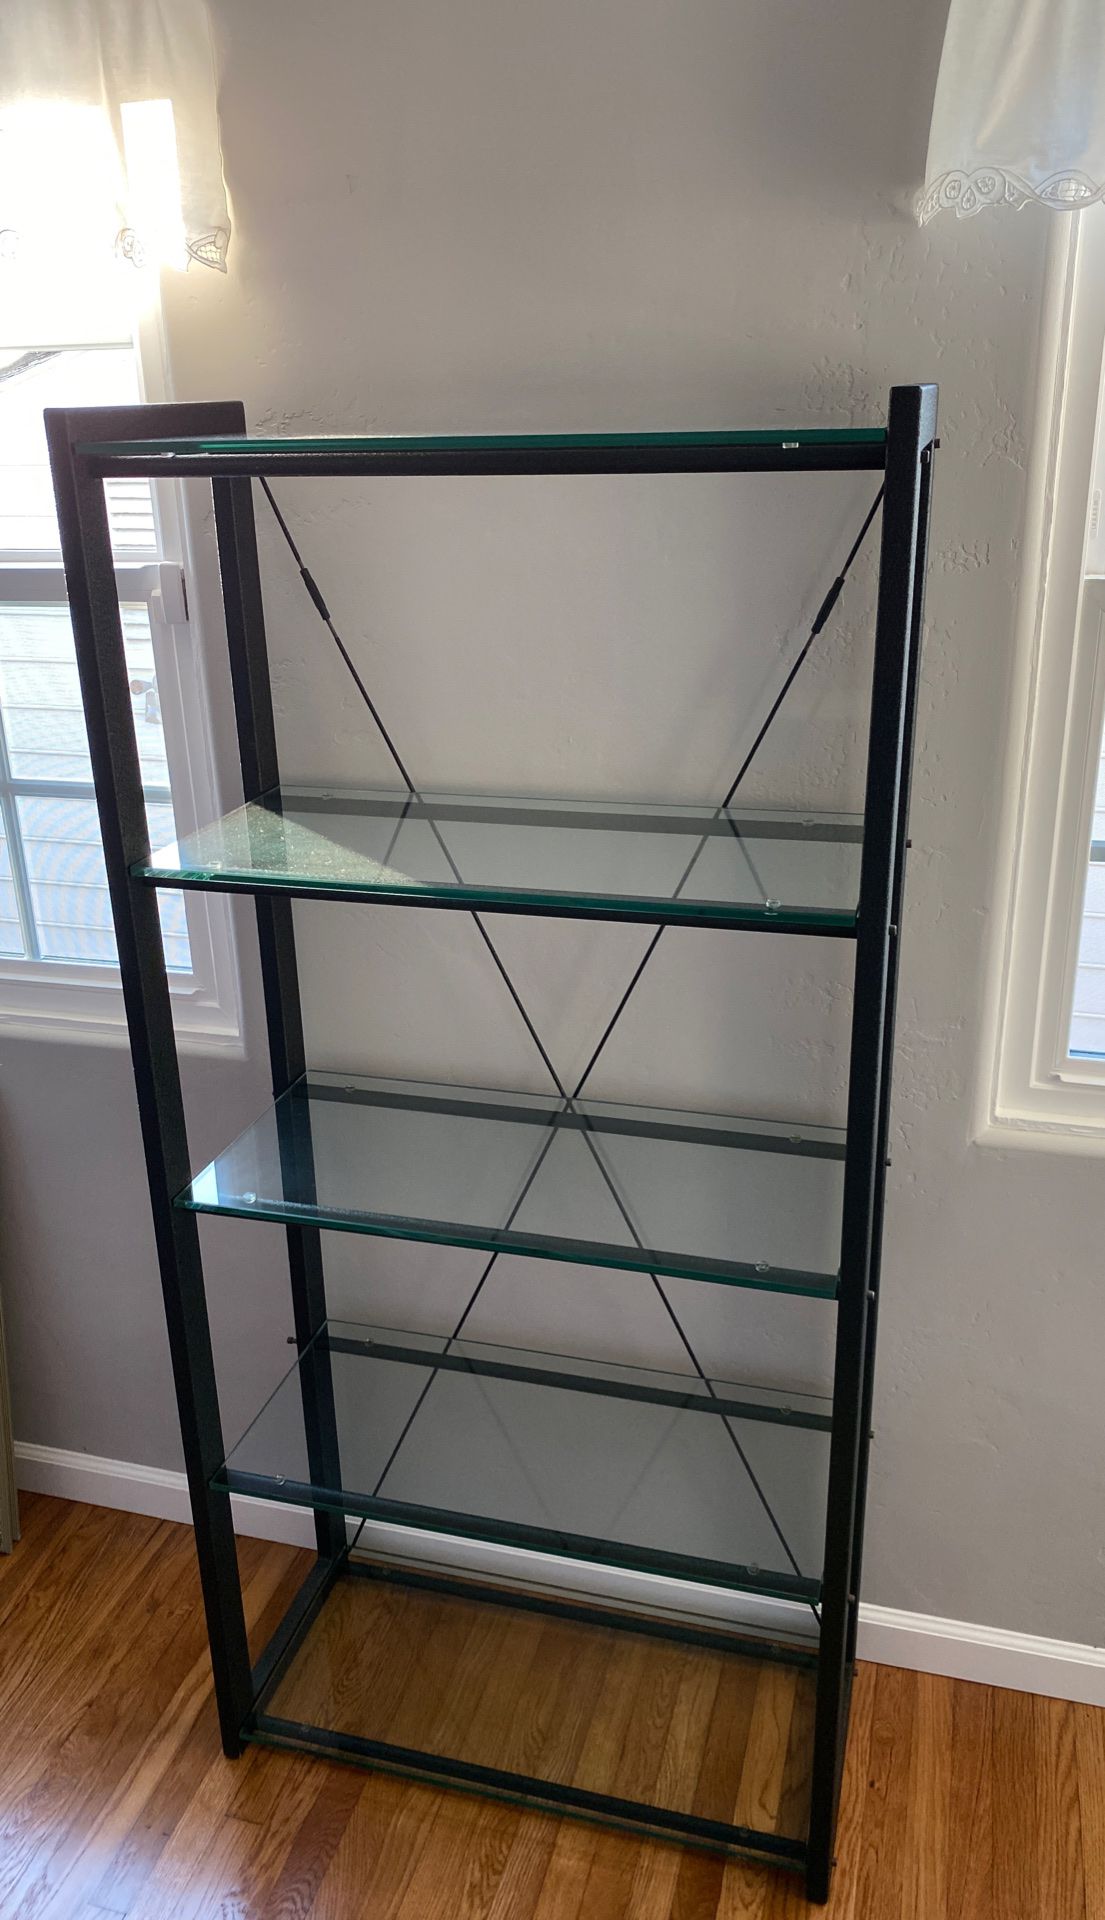 Modern Bookshelf or shelving unit